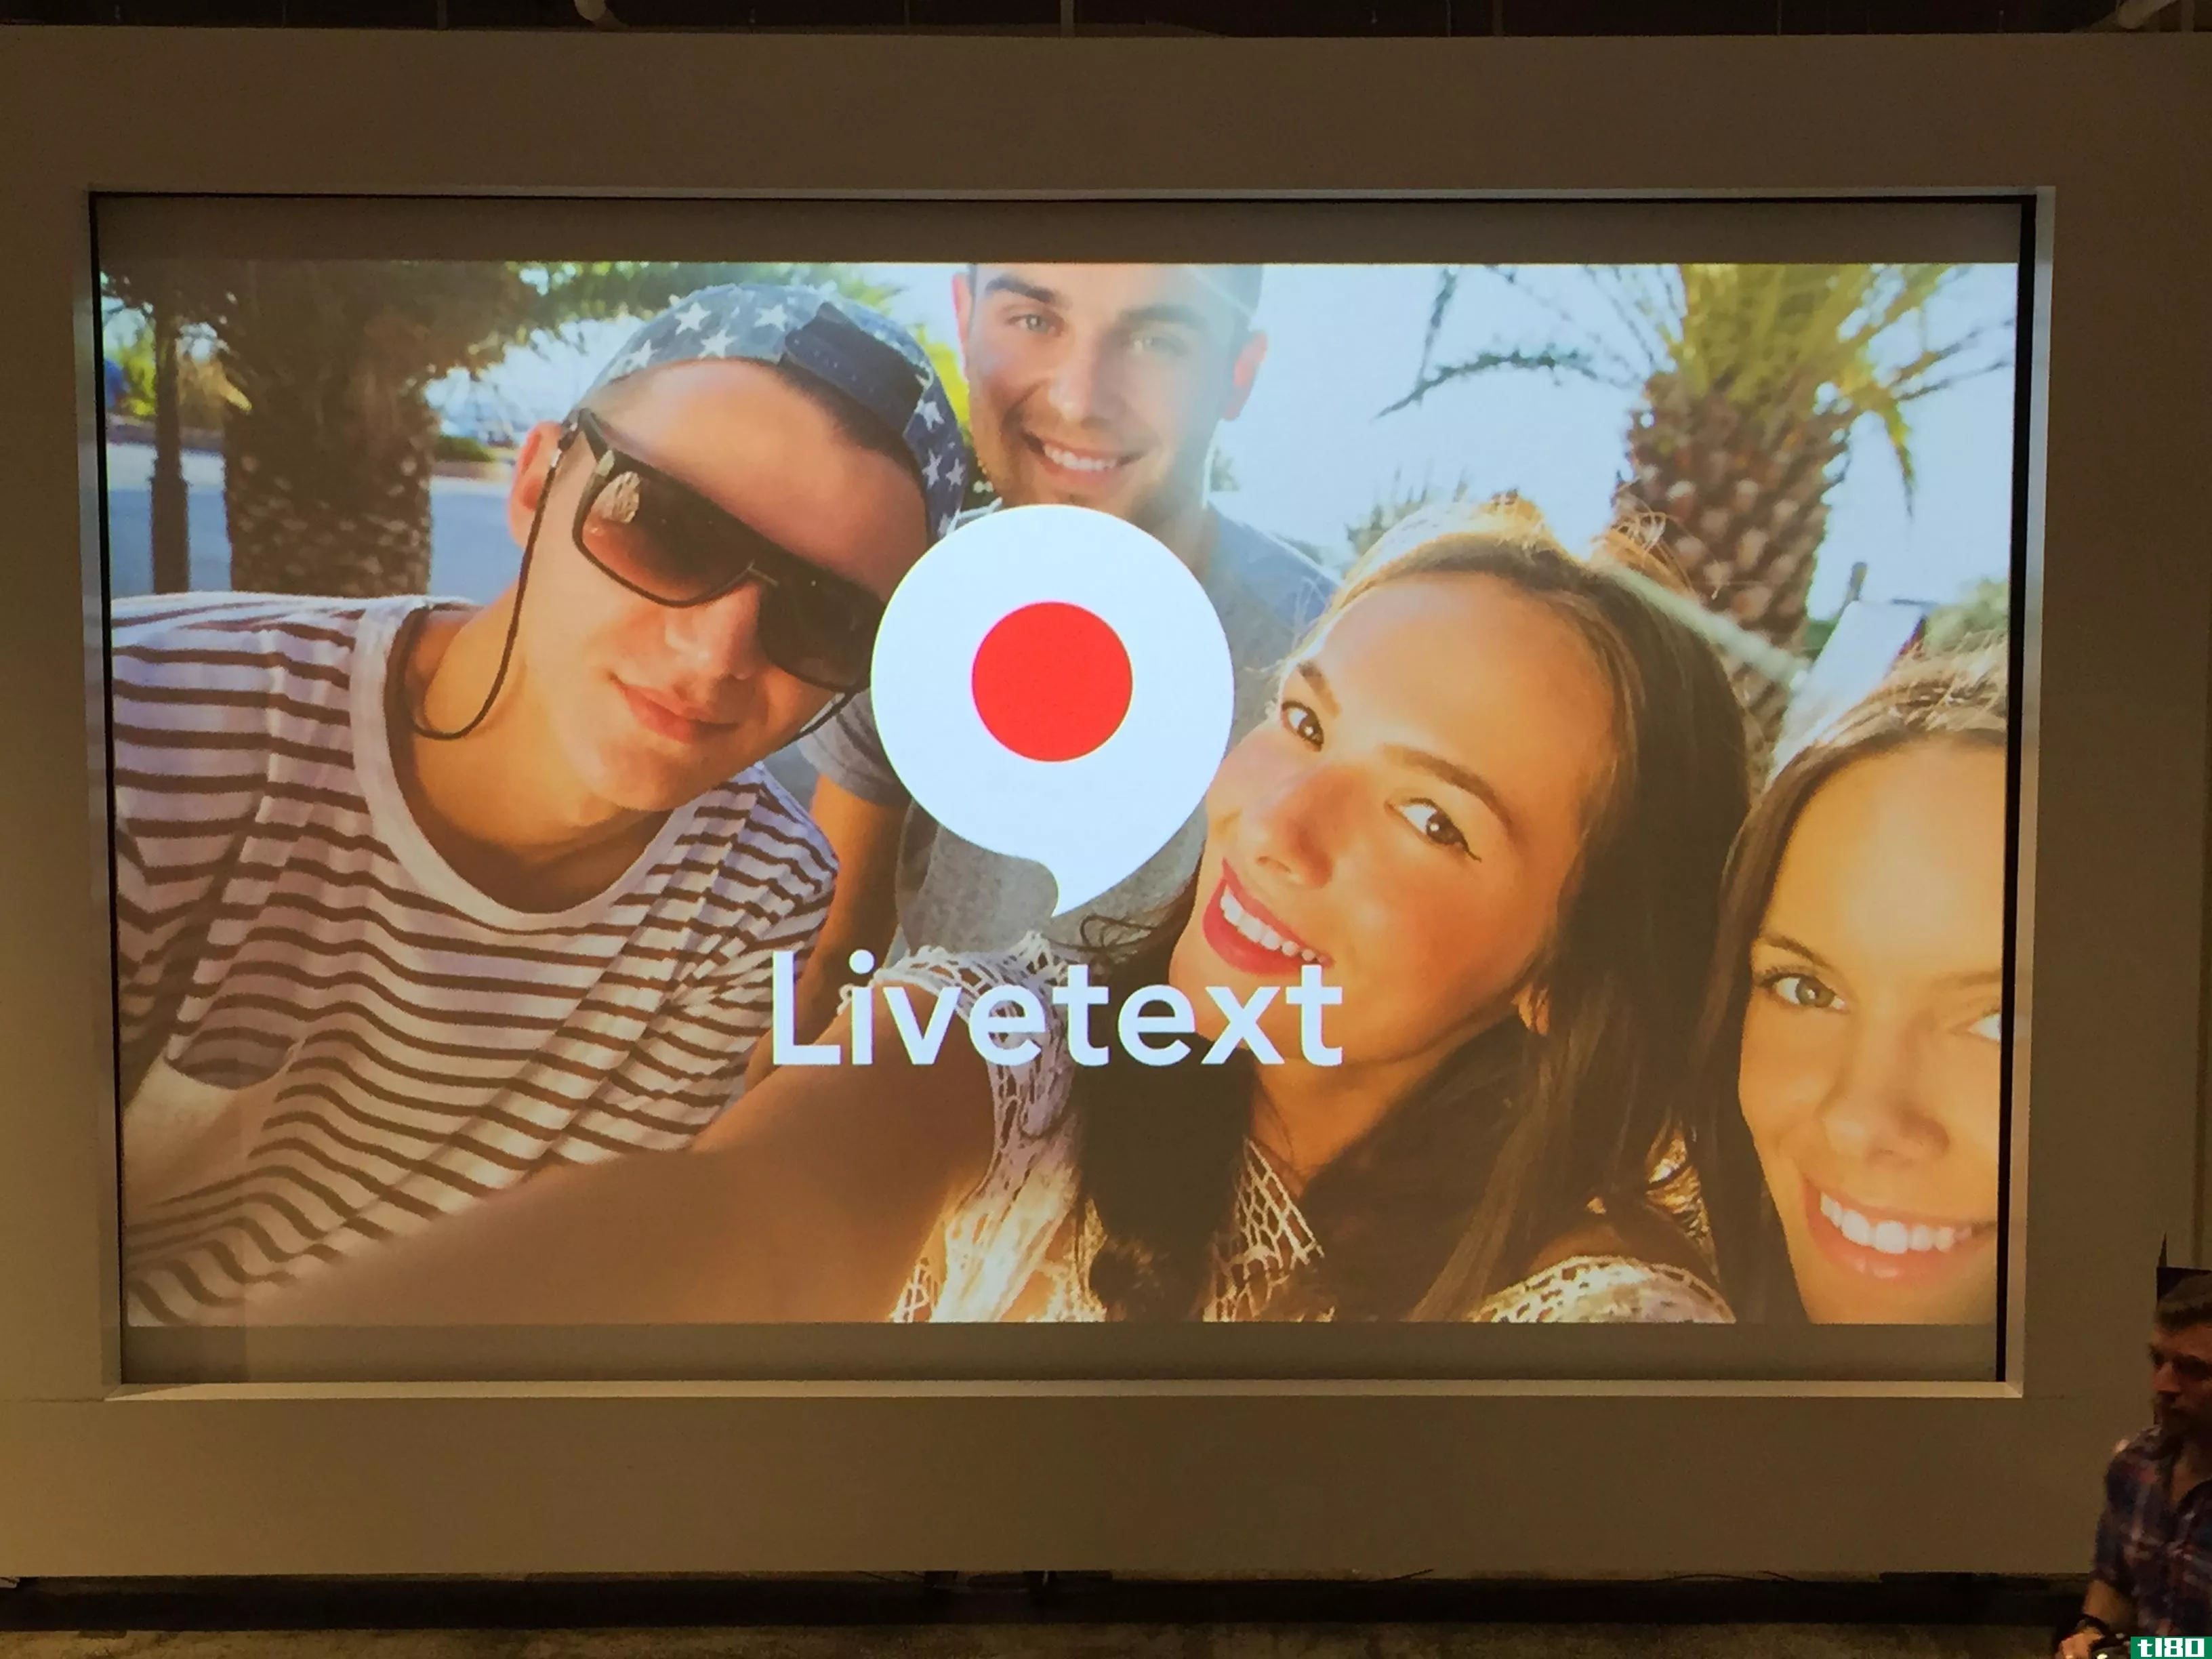 雅虎推出了新的无声视频聊天应用livetext